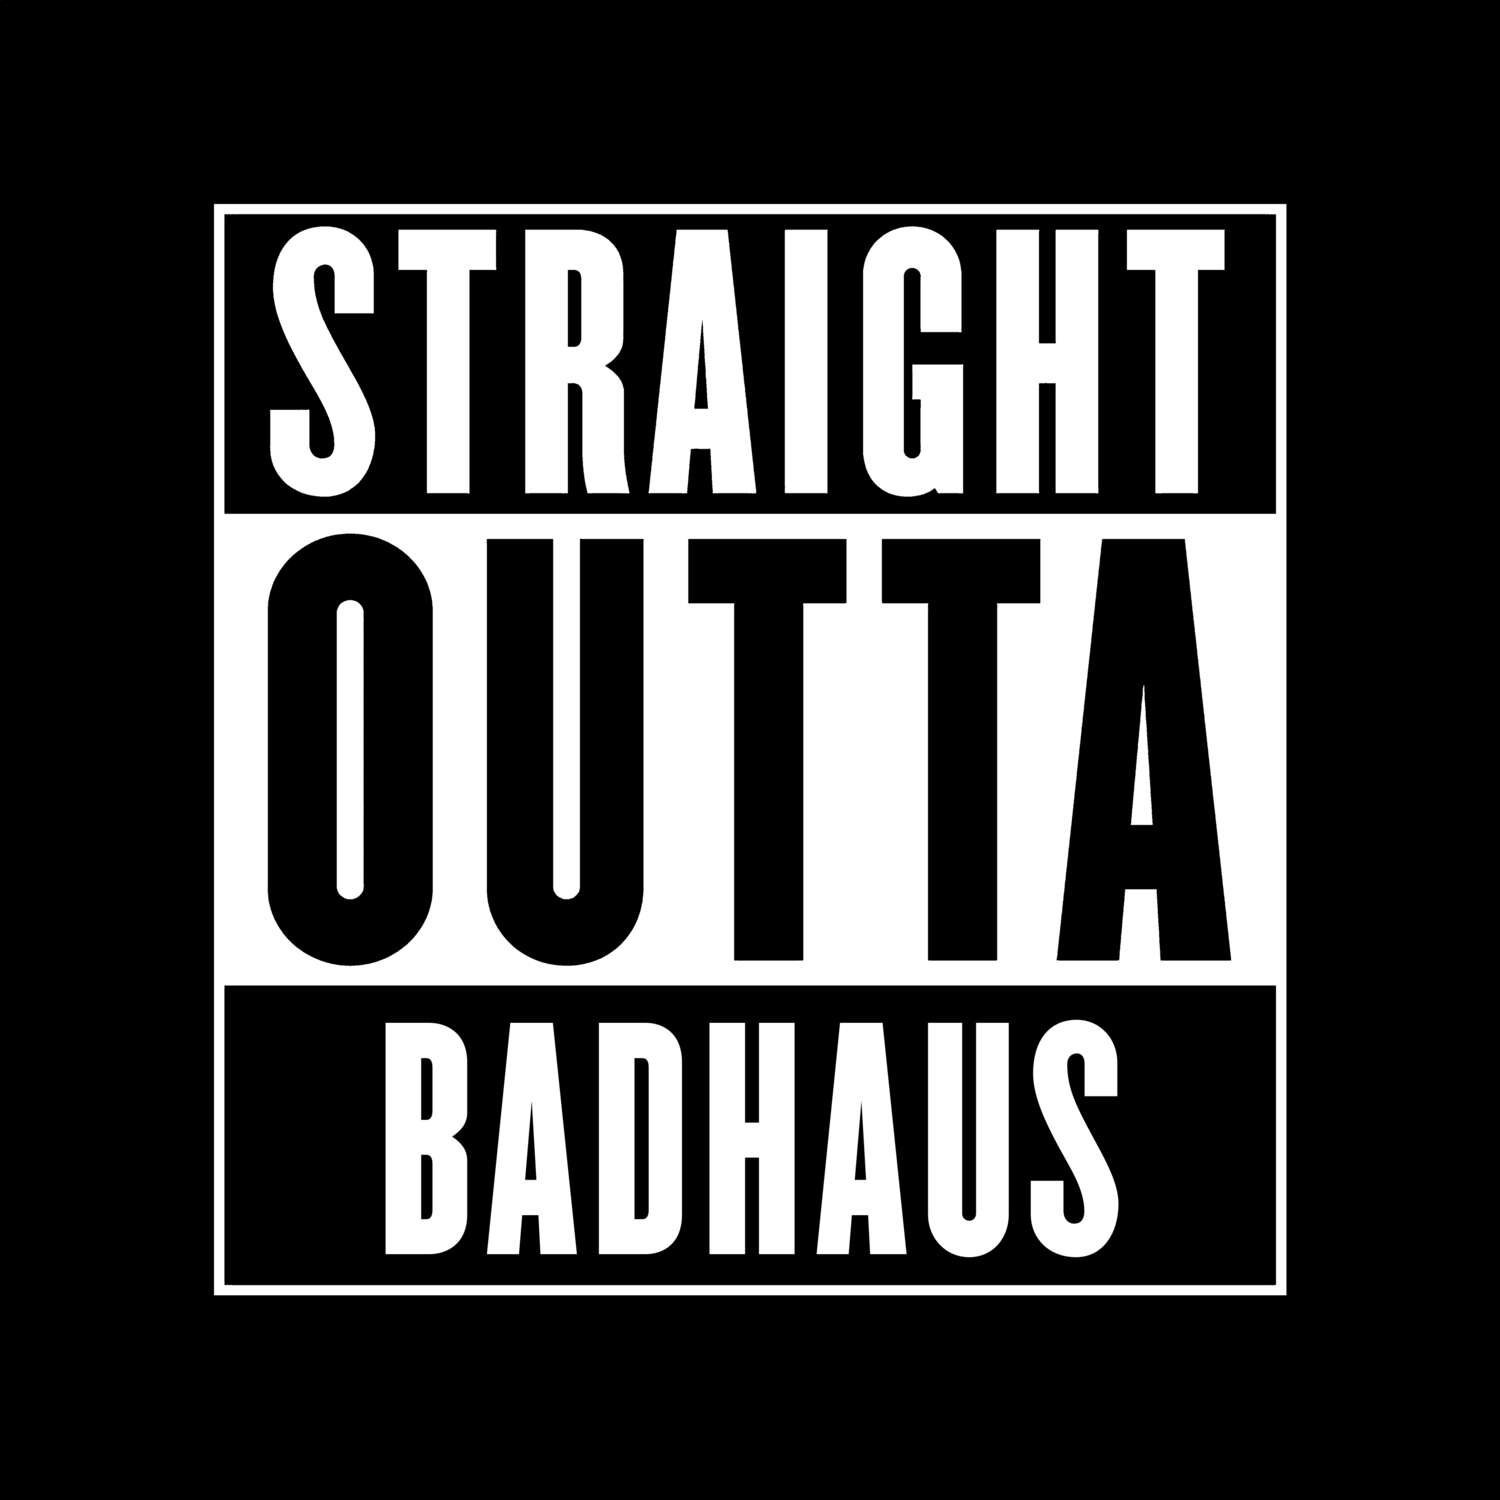 Badhaus T-Shirt »Straight Outta«